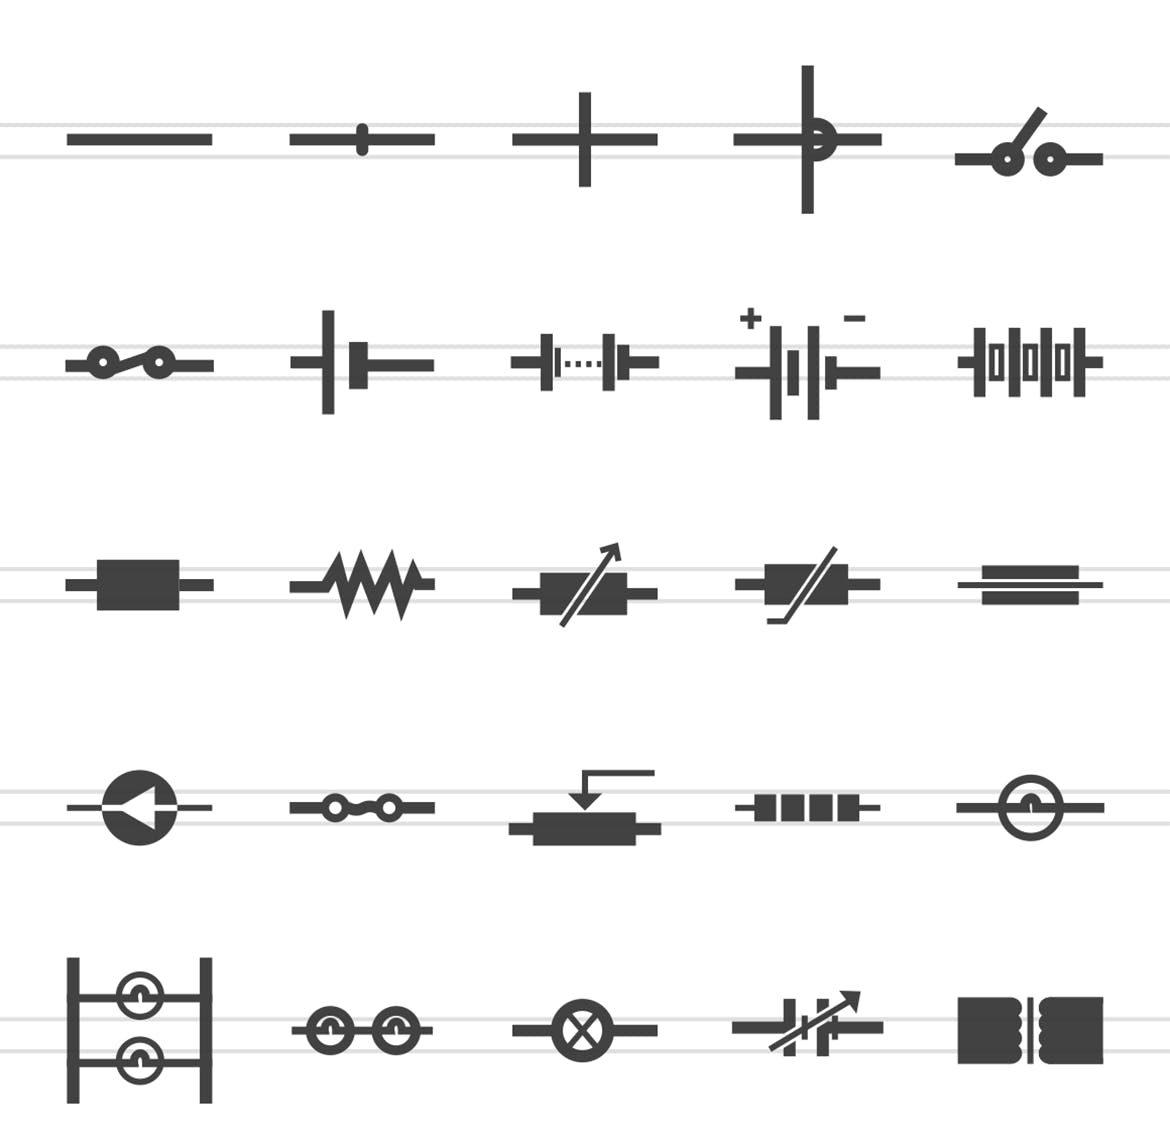 50枚电路线路板主题黑色字体第一素材精选图标 50 Electric Circuits Glyph Icons插图(1)